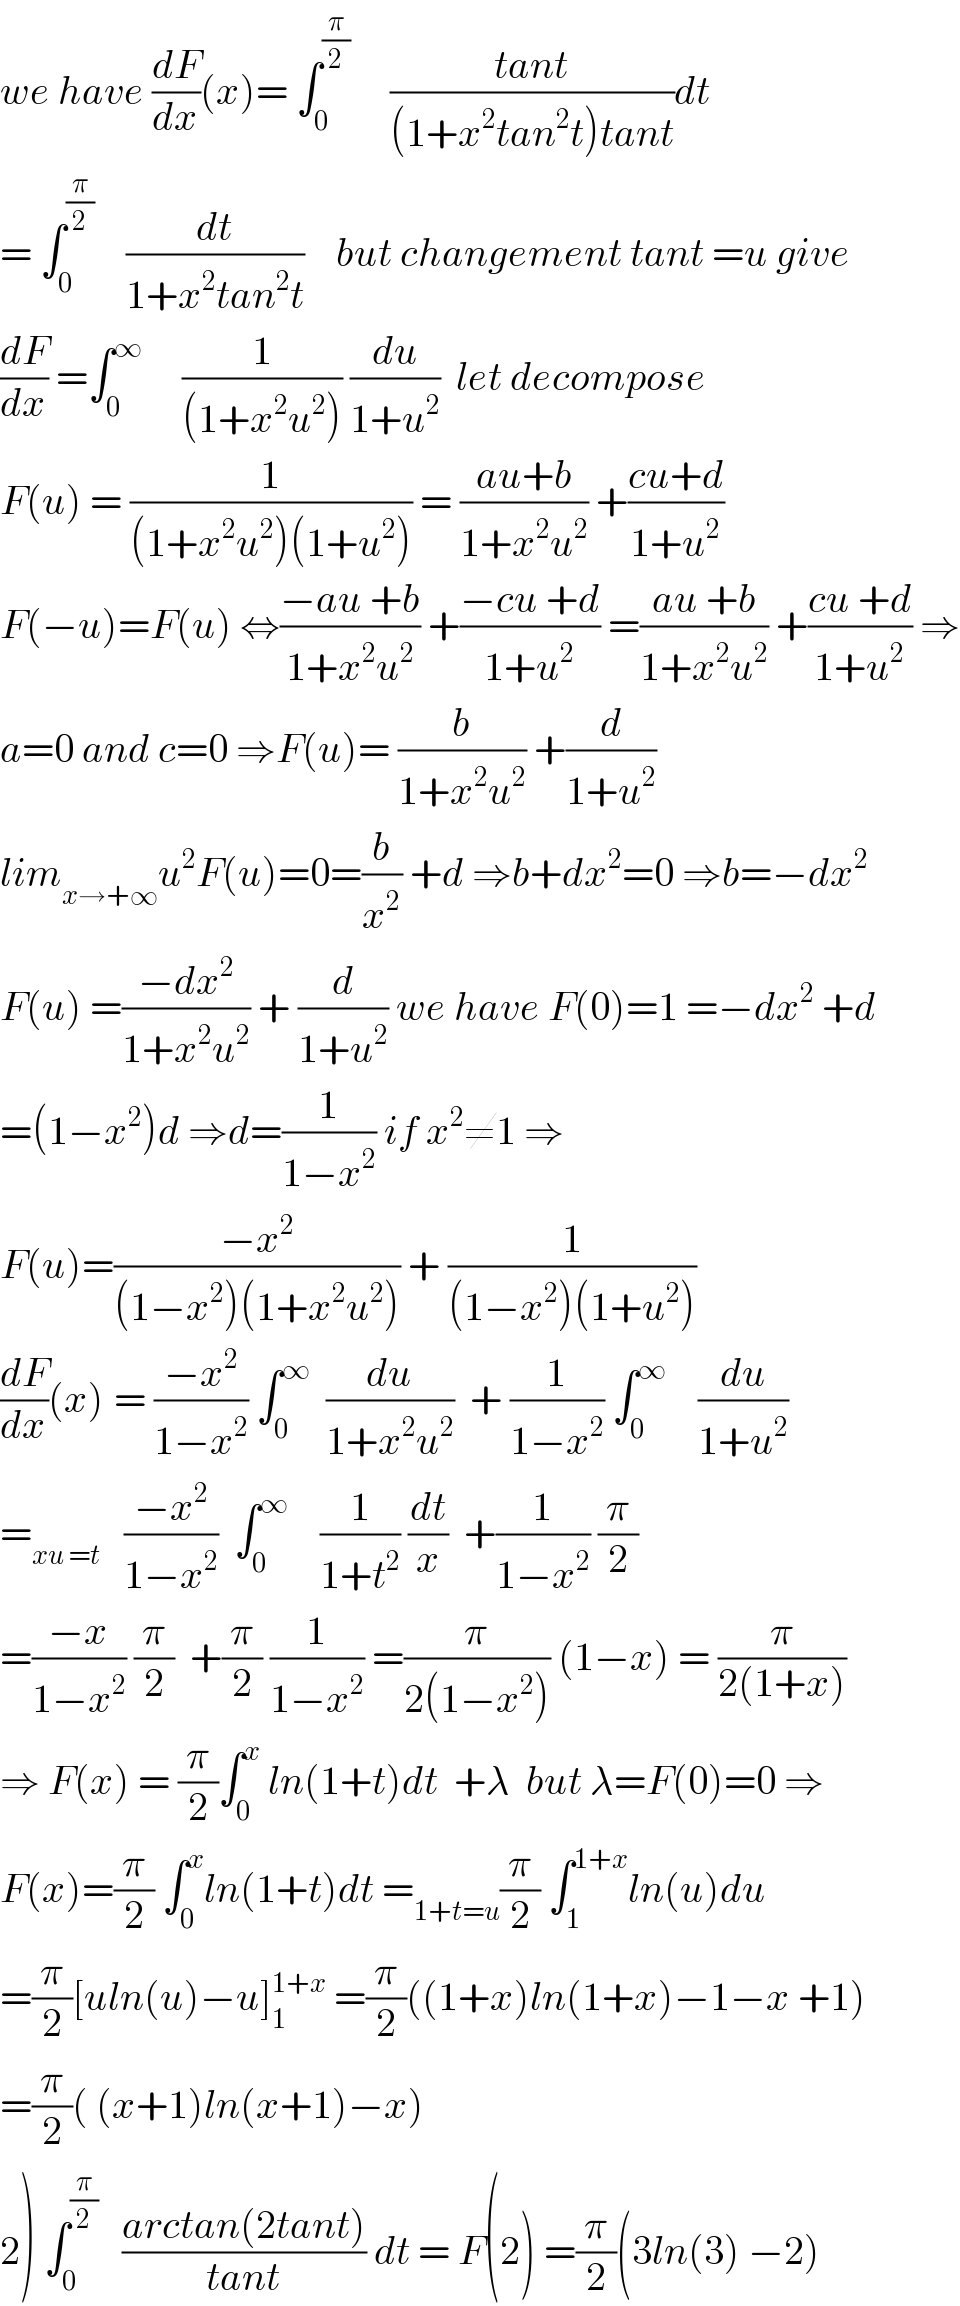 we have (dF/dx)(x)= ∫_0 ^(π/2)      ((tant)/((1+x^2 tan^2 t)tant))dt  = ∫_0 ^(π/2)     (dt/(1+x^2 tan^2 t))    but changement tant =u give  (dF/dx) =∫_0 ^∞      (1/((1+x^2 u^2 ))) (du/(1+u^2 ))  let decompose  F(u) = (1/((1+x^2 u^2 )(1+u^2 ))) = ((au+b)/(1+x^2 u^2 )) +((cu+d)/(1+u^2 ))  F(−u)=F(u) ⇔((−au +b)/(1+x^2 u^2 )) +((−cu +d)/(1+u^2 )) =((au +b)/(1+x^2 u^2 )) +((cu +d)/(1+u^2 )) ⇒  a=0 and c=0 ⇒F(u)= (b/(1+x^2 u^2 )) +(d/(1+u^2 ))  lim_(x→+∞) u^2 F(u)=0=(b/x^2 ) +d ⇒b+dx^2 =0 ⇒b=−dx^2   F(u) =((−dx^2 )/(1+x^2 u^2 )) + (d/(1+u^2 )) we have F(0)=1 =−dx^2  +d  =(1−x^2 )d ⇒d=(1/(1−x^2 )) if x^2 ≠1 ⇒  F(u)=((−x^2 )/((1−x^2 )(1+x^2 u^2 ))) + (1/((1−x^2 )(1+u^2 )))  (dF/dx)(x)^ = ((−x^2 )/(1−x^2 )) ∫_0 ^∞   (du/(1+x^2 u^2 ))  + (1/(1−x^2 )) ∫_0 ^∞     (du/(1+u^2 ))  =_(xu =t)    ((−x^2 )/(1−x^2 ))  ∫_0 ^∞     (1/(1+t^2 )) (dt/x)  +(1/(1−x^2 )) (π/2)  =((−x)/(1−x^2 )) (π/2)  +(π/2) (1/(1−x^2 )) =(π/(2(1−x^2 ))) (1−x) = (π/(2(1+x)))  ⇒ F(x) = (π/2)∫_0 ^x  ln(1+t)dt  +λ  but λ=F(0)=0 ⇒  F(x)=(π/2) ∫_0 ^x ln(1+t)dt =_(1+t=u) (π/2) ∫_1 ^(1+x) ln(u)du  =(π/2)[uln(u)−u]_1 ^(1+x)  =(π/2)((1+x)ln(1+x)−1−x +1)  =(π/2)( (x+1)ln(x+1)−x)  2) ∫_0 ^(π/2)    ((arctan(2tant))/(tant)) dt = F(2) =(π/2)(3ln(3) −2)  